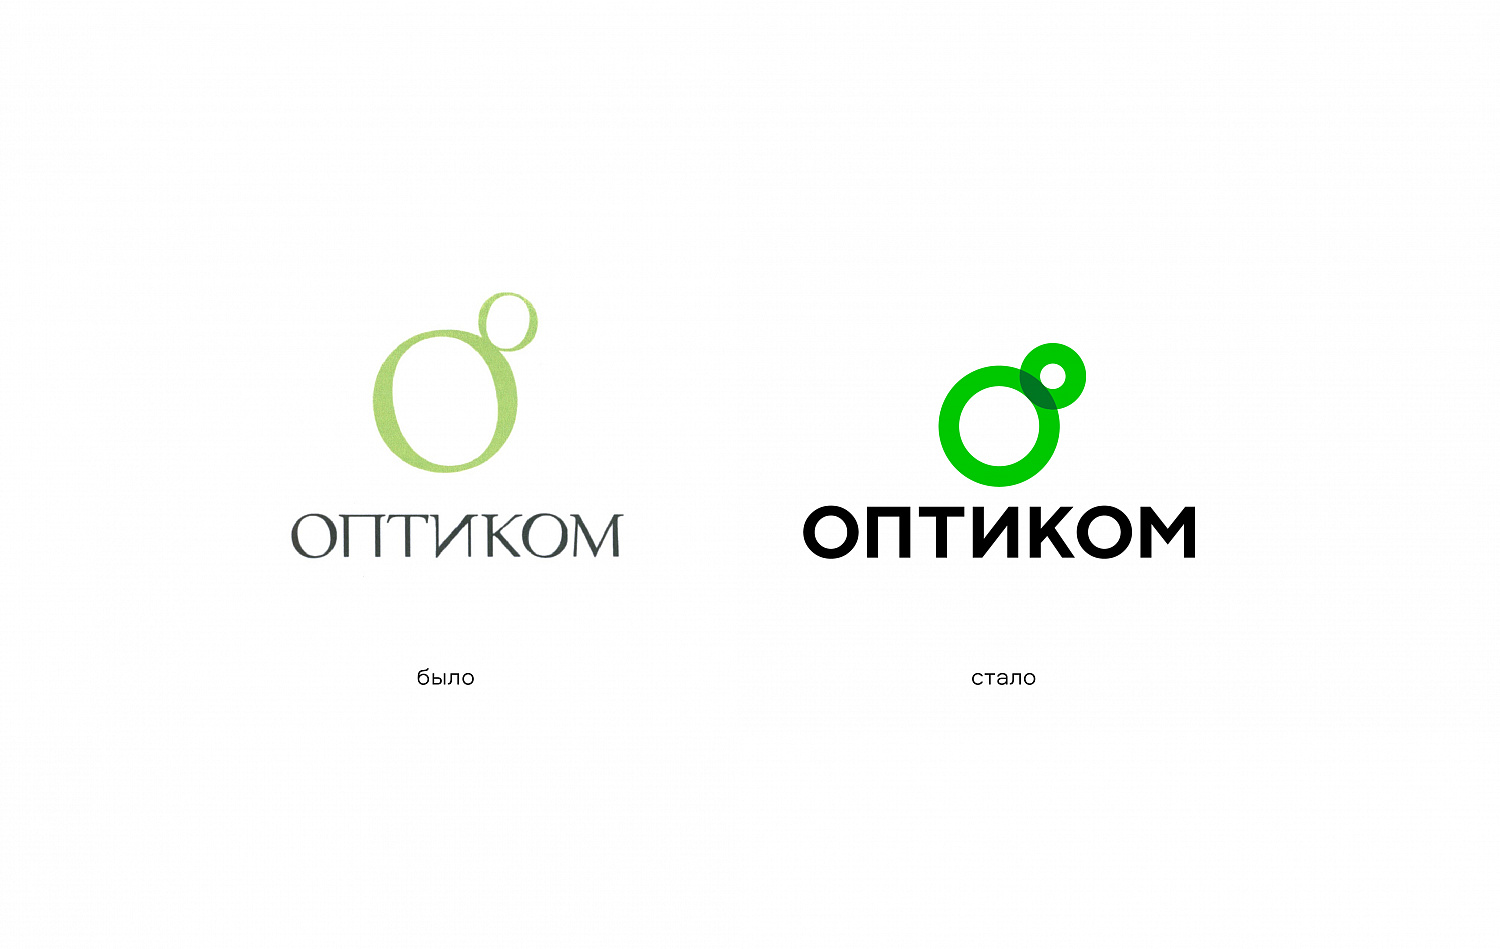 Обновление логотипа и фирменного стиля бренда Оптиком - Портфолио Depot